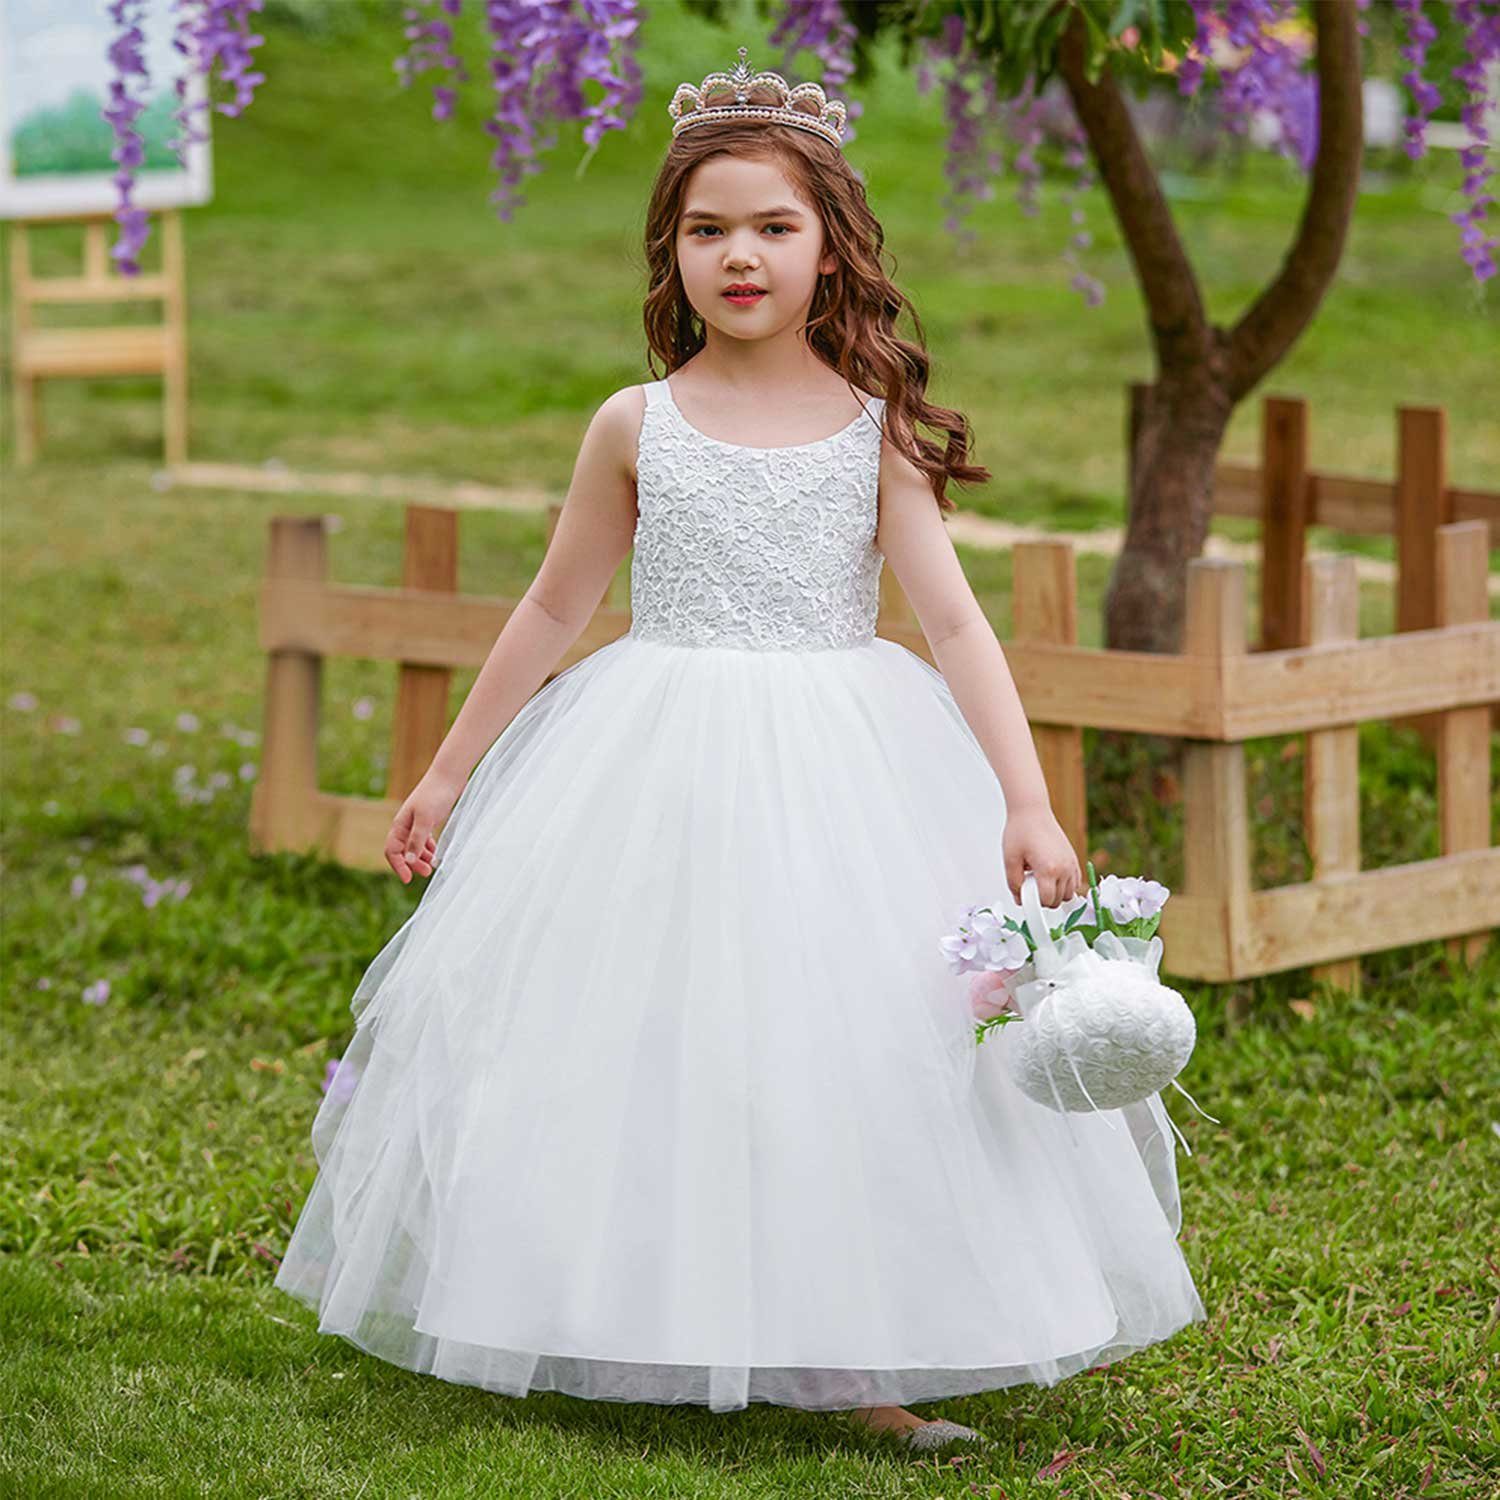 Daisred Partykleid Mädchenkleider Prinzessin Kleidung Weiß Performance Kleider